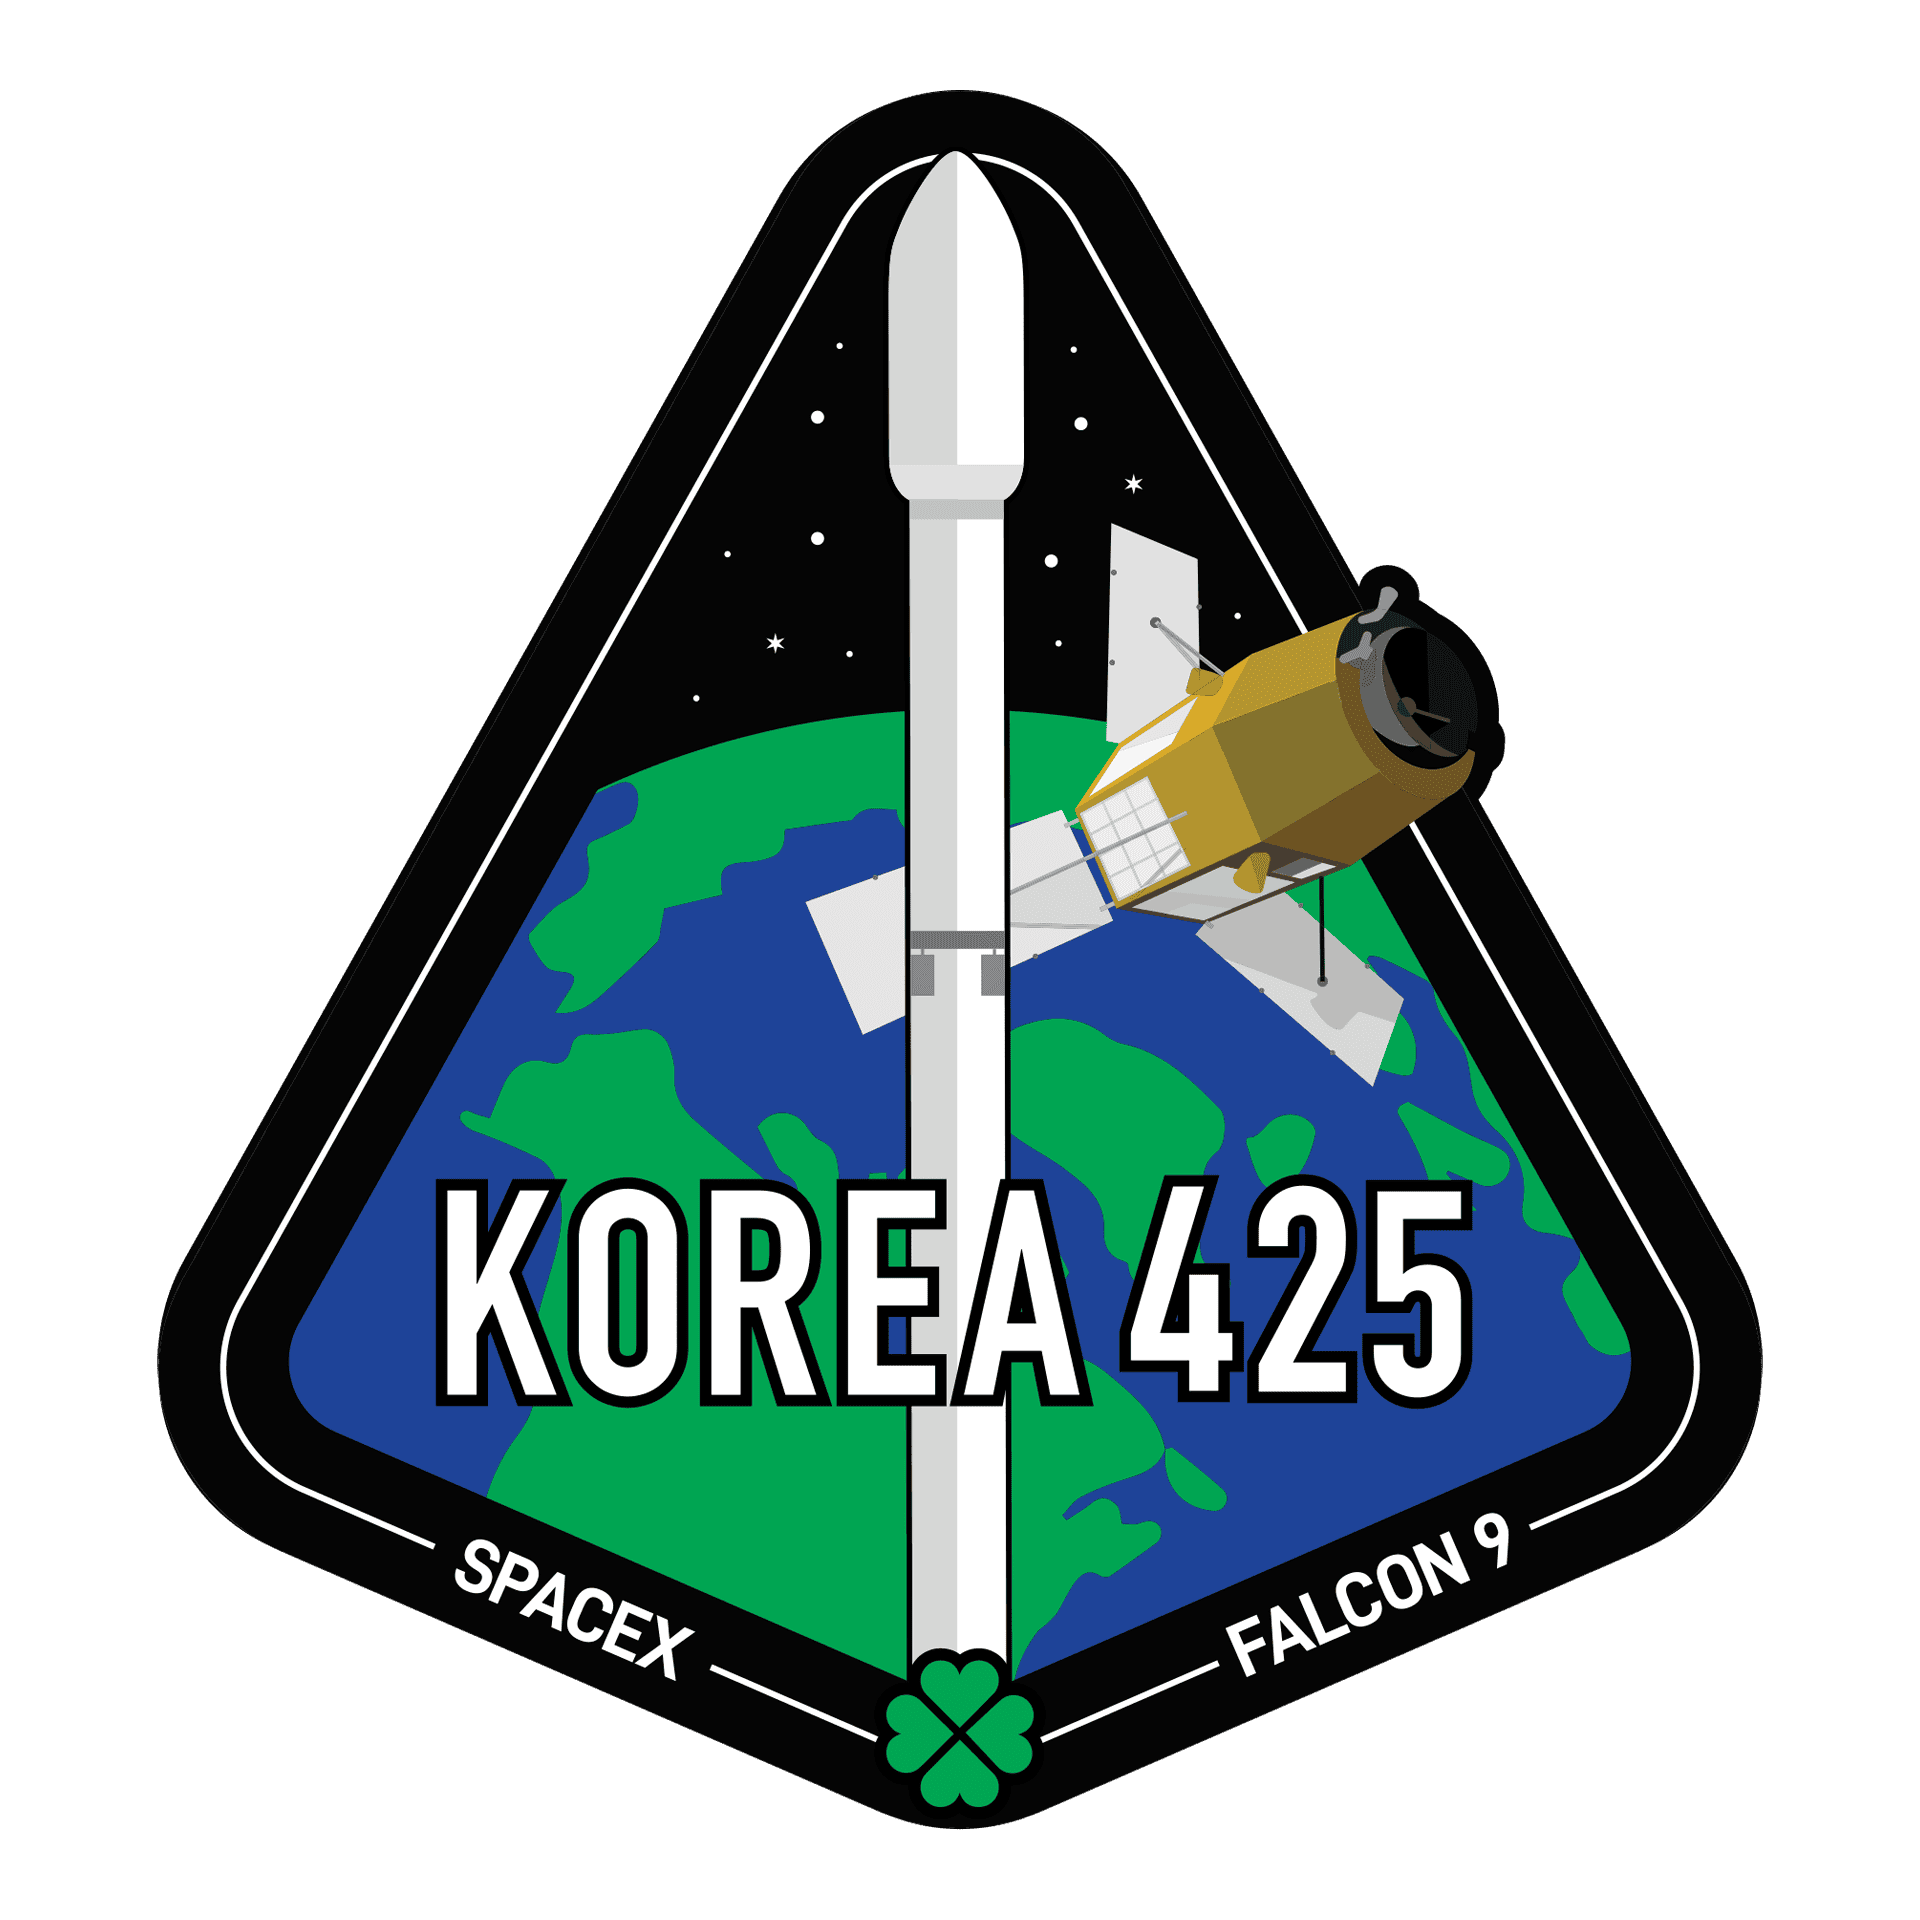 KOREA_425_mission-patch.png